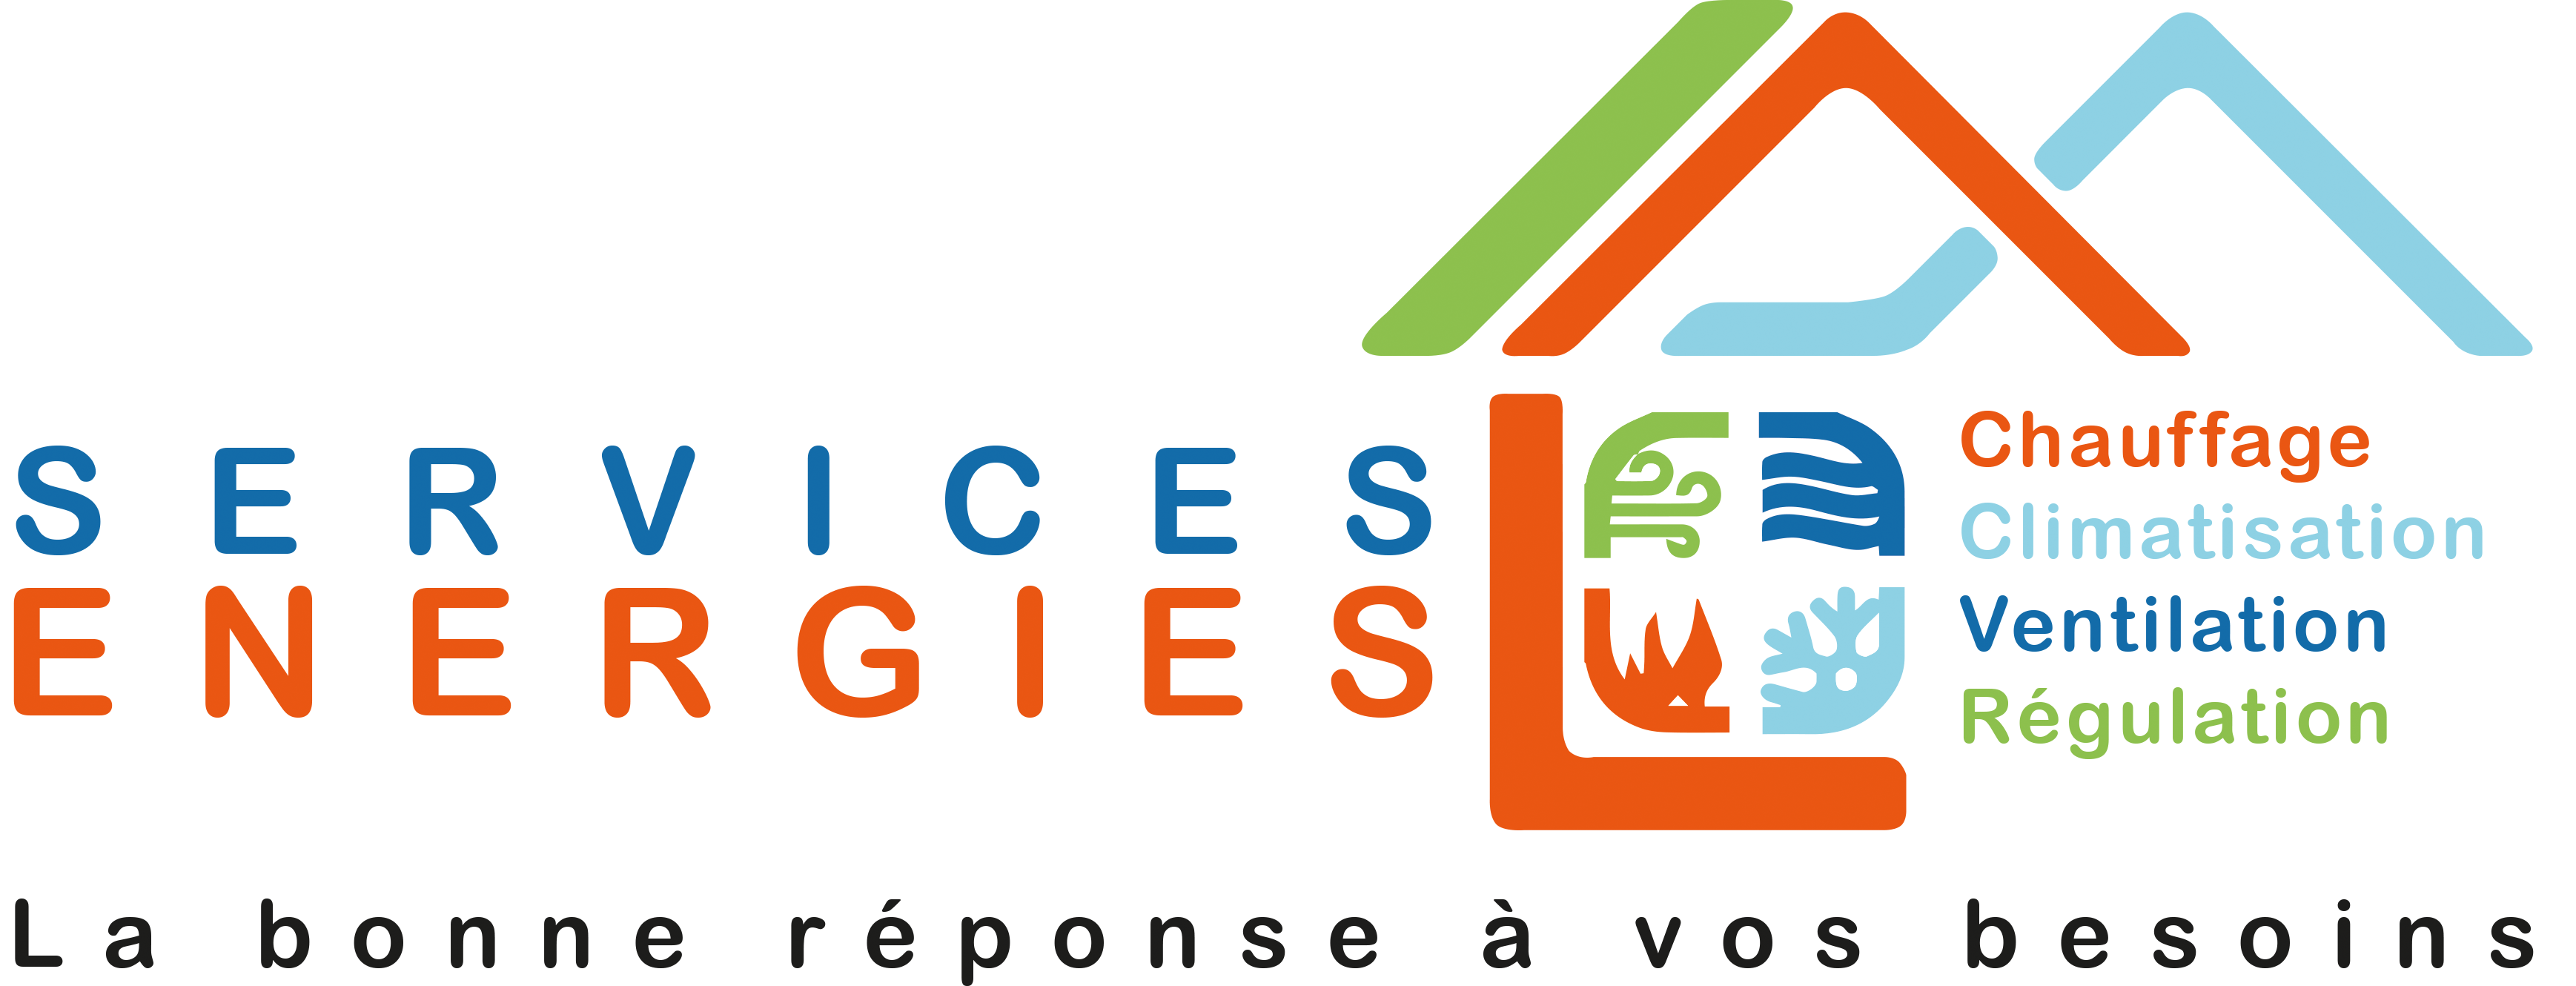 Chauffage - climatisation - ventilation - pompe à chaleur - Villeneuve d'Ascq